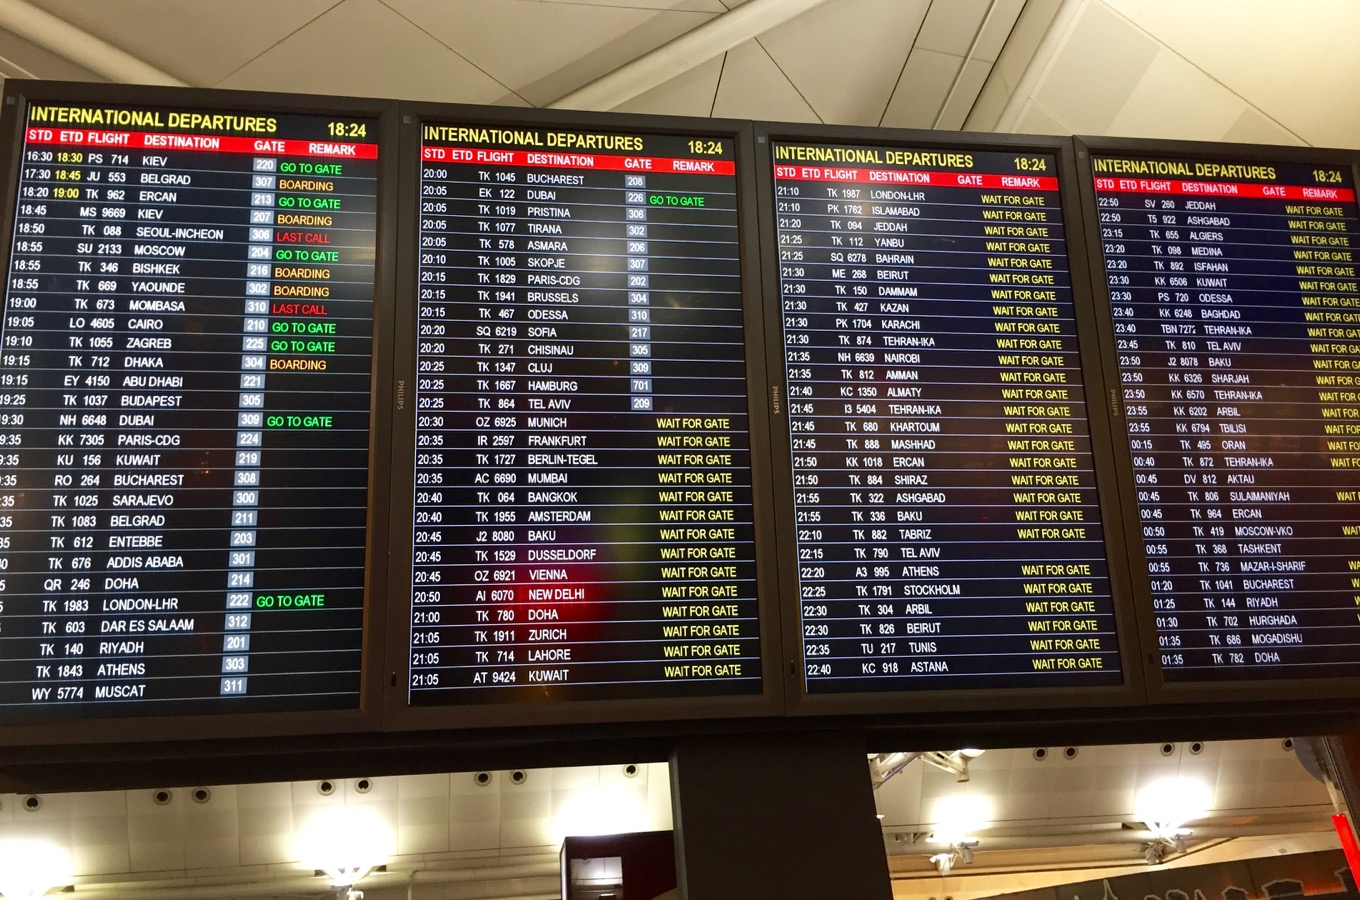 Affichage des horaires de départ des vols depuis l’aéroport de Francfort